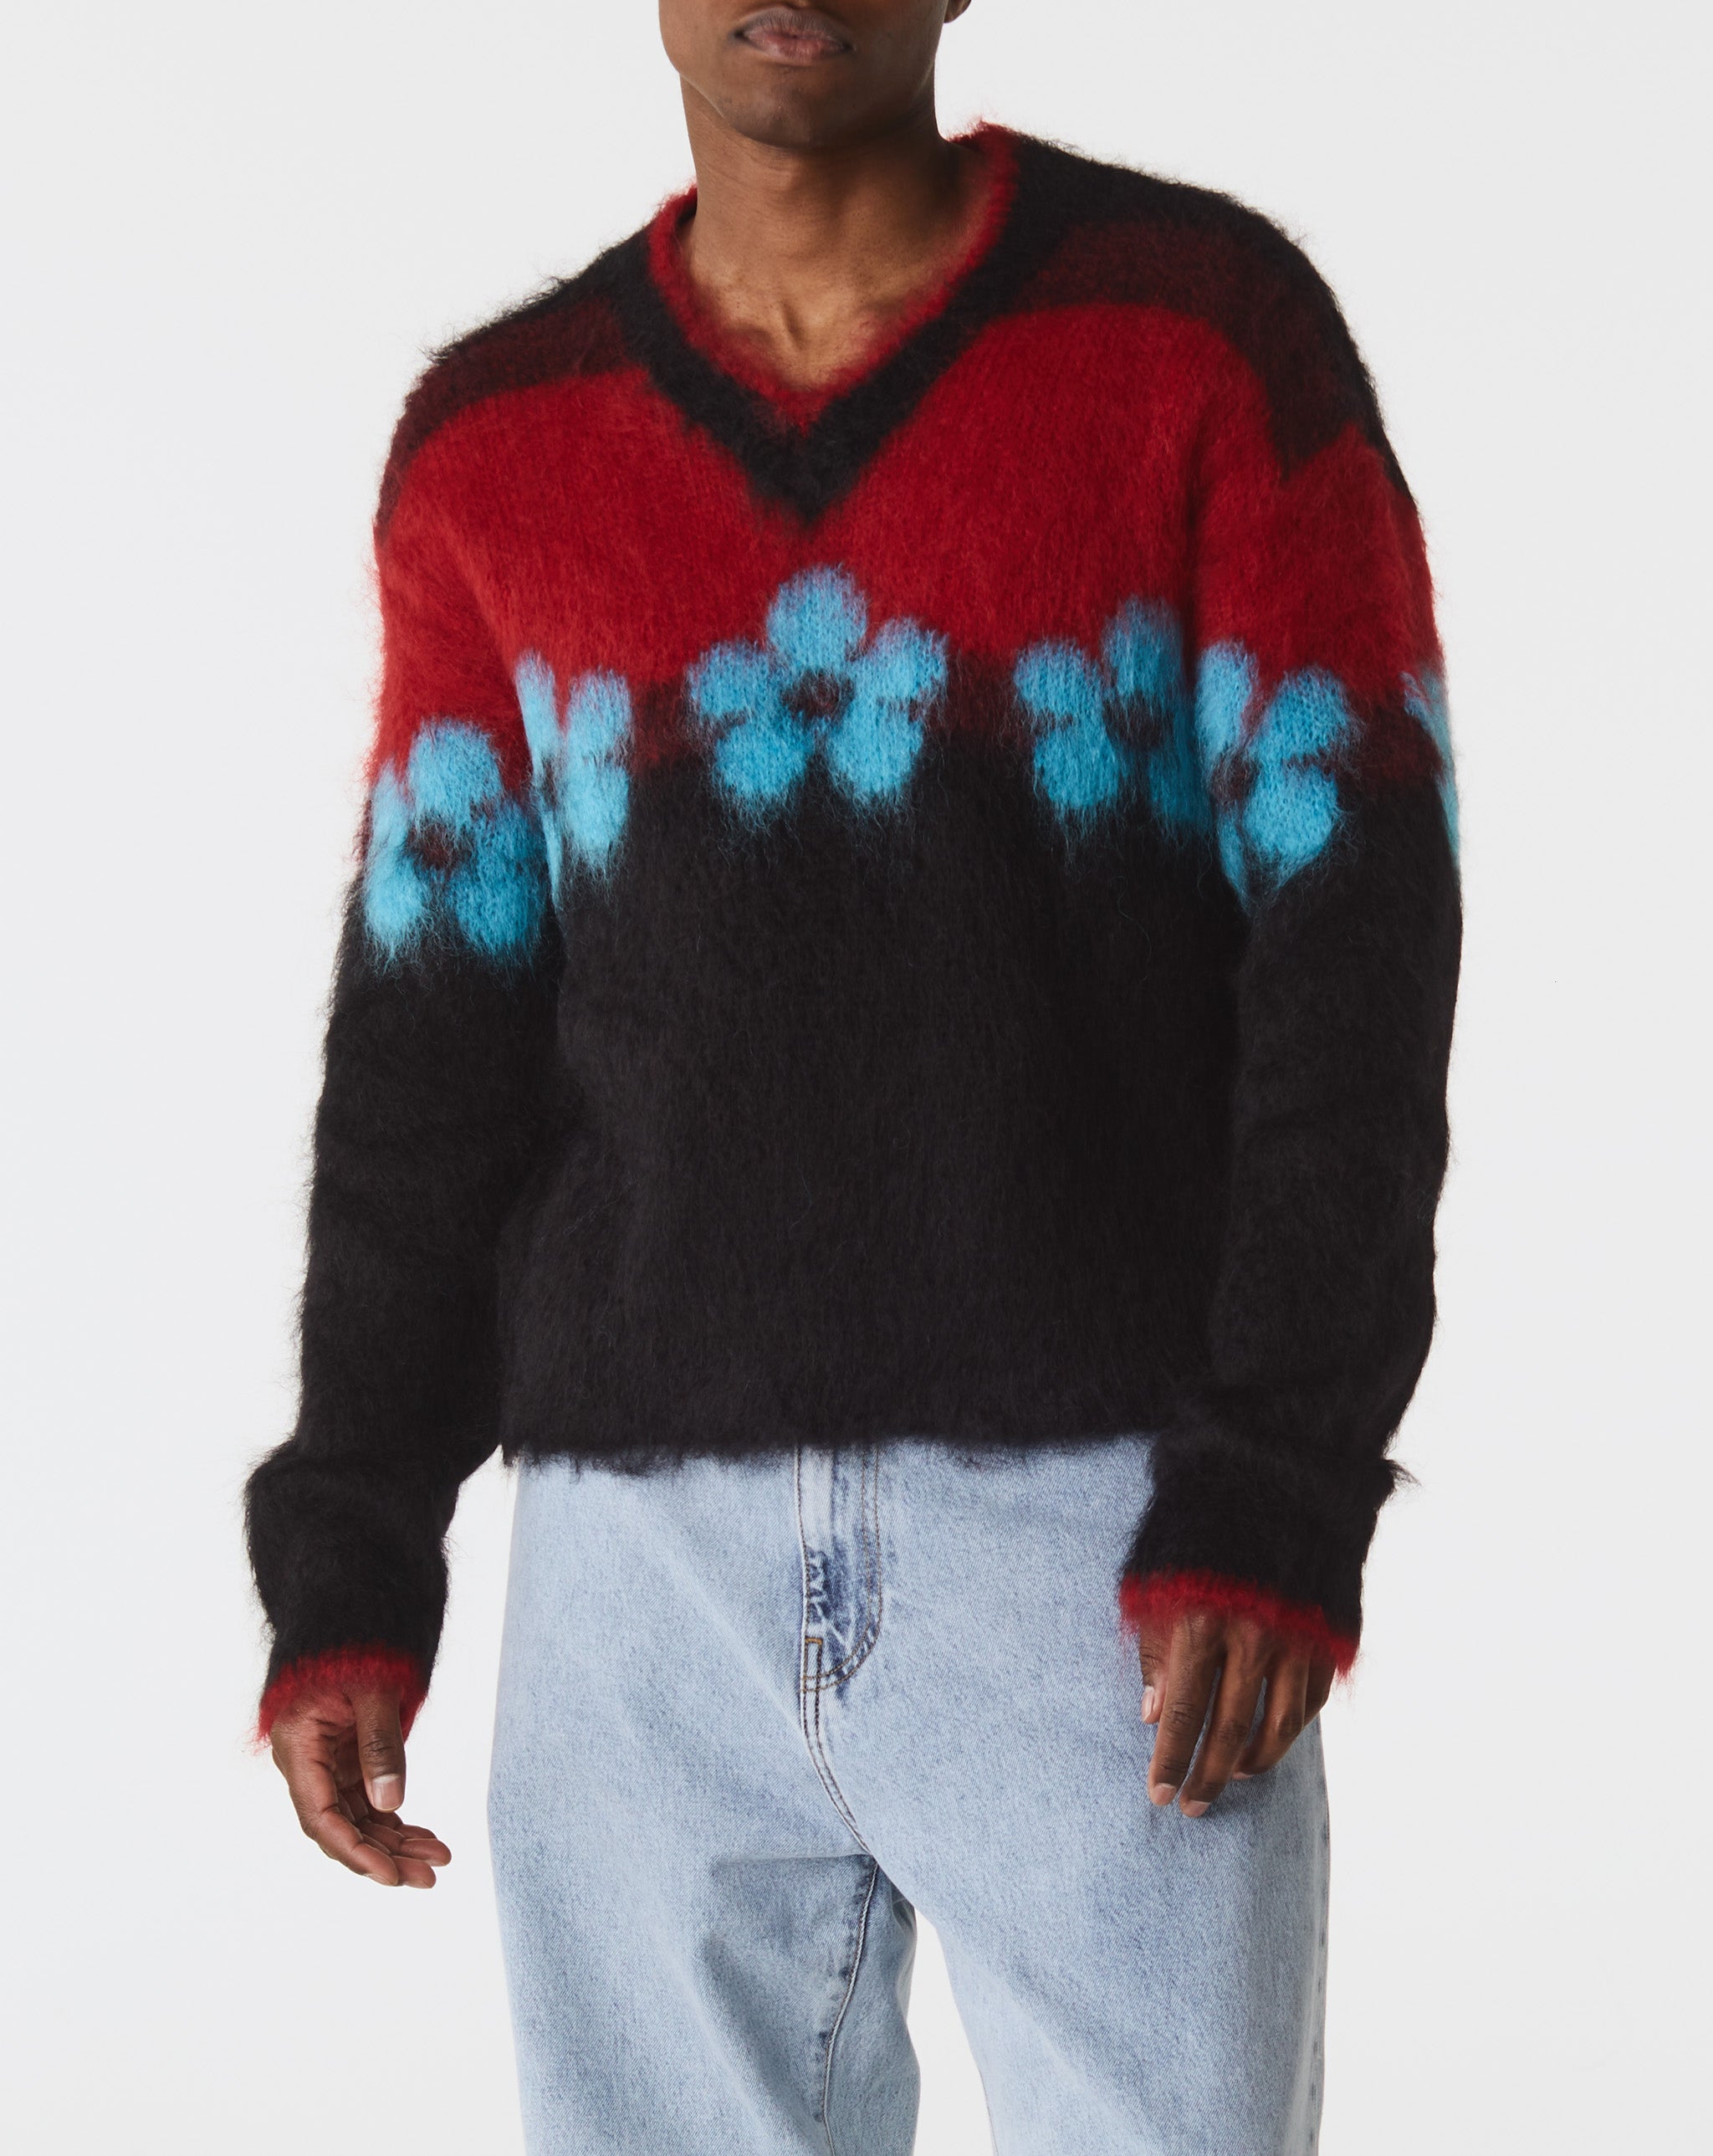 Marni Fuzzy Wuzzy Flowers Sweater  - XHIBITION